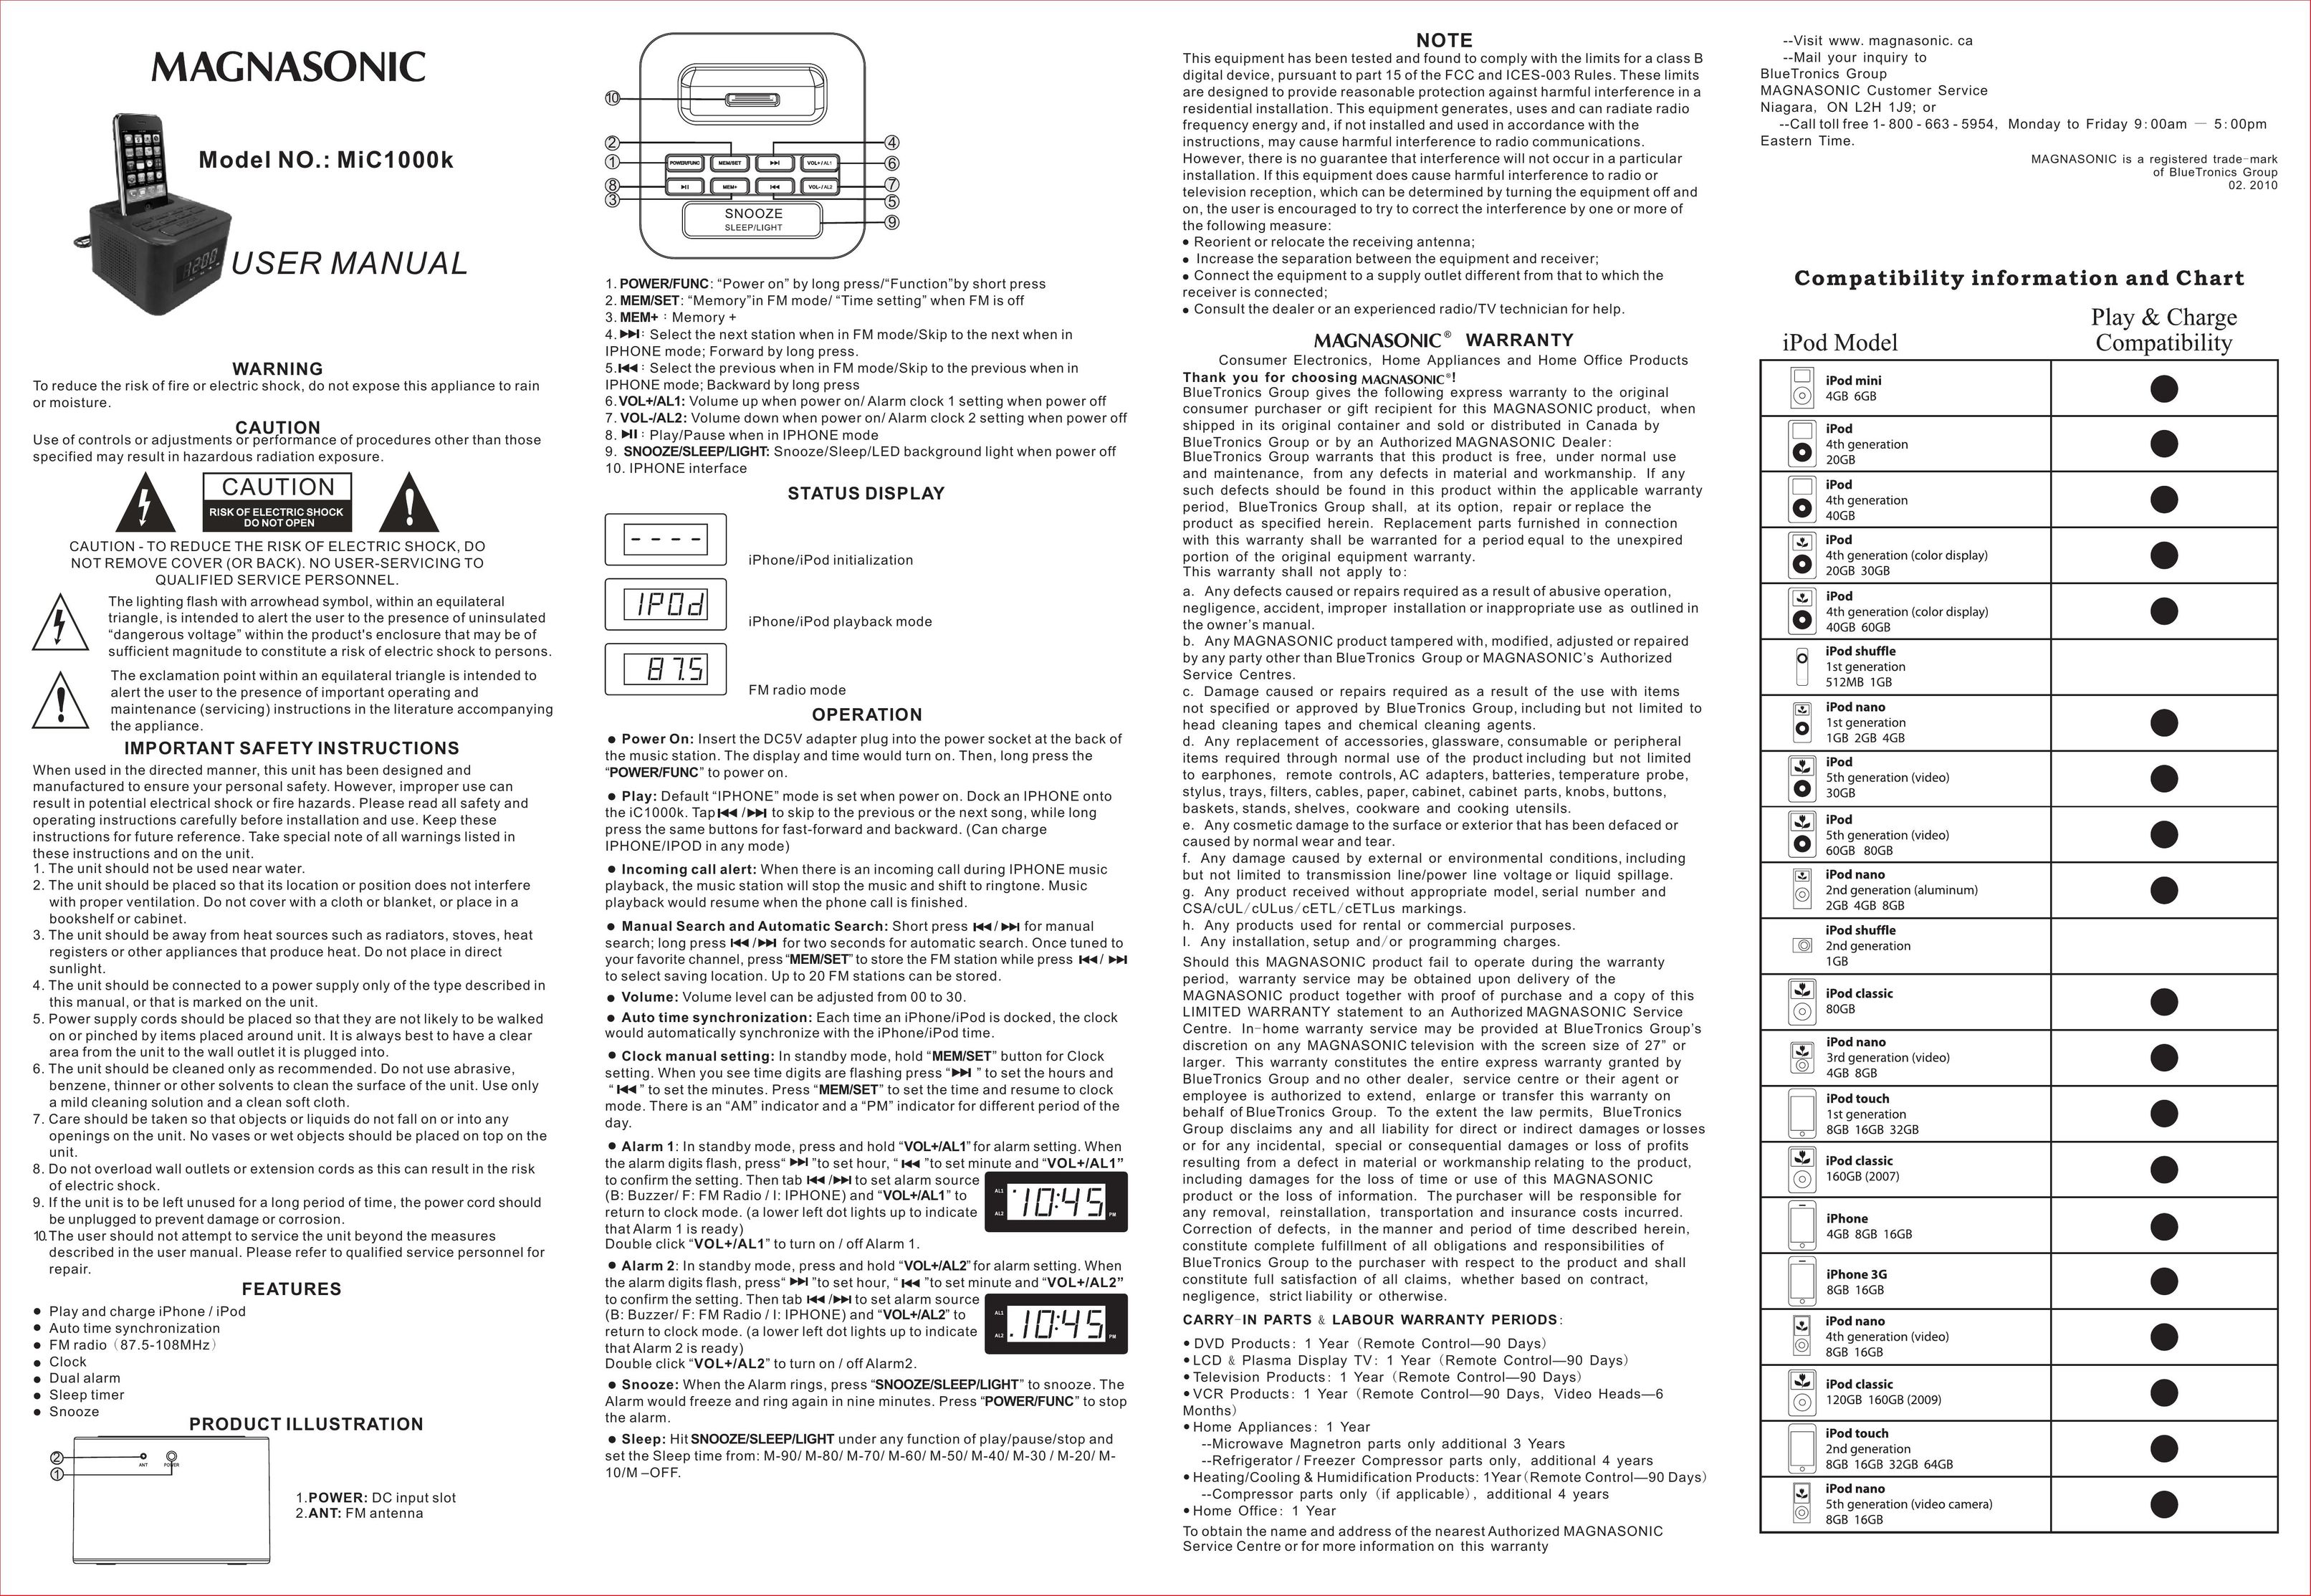 Magnasonic MiC1000k MP3 Docking Station User Manual